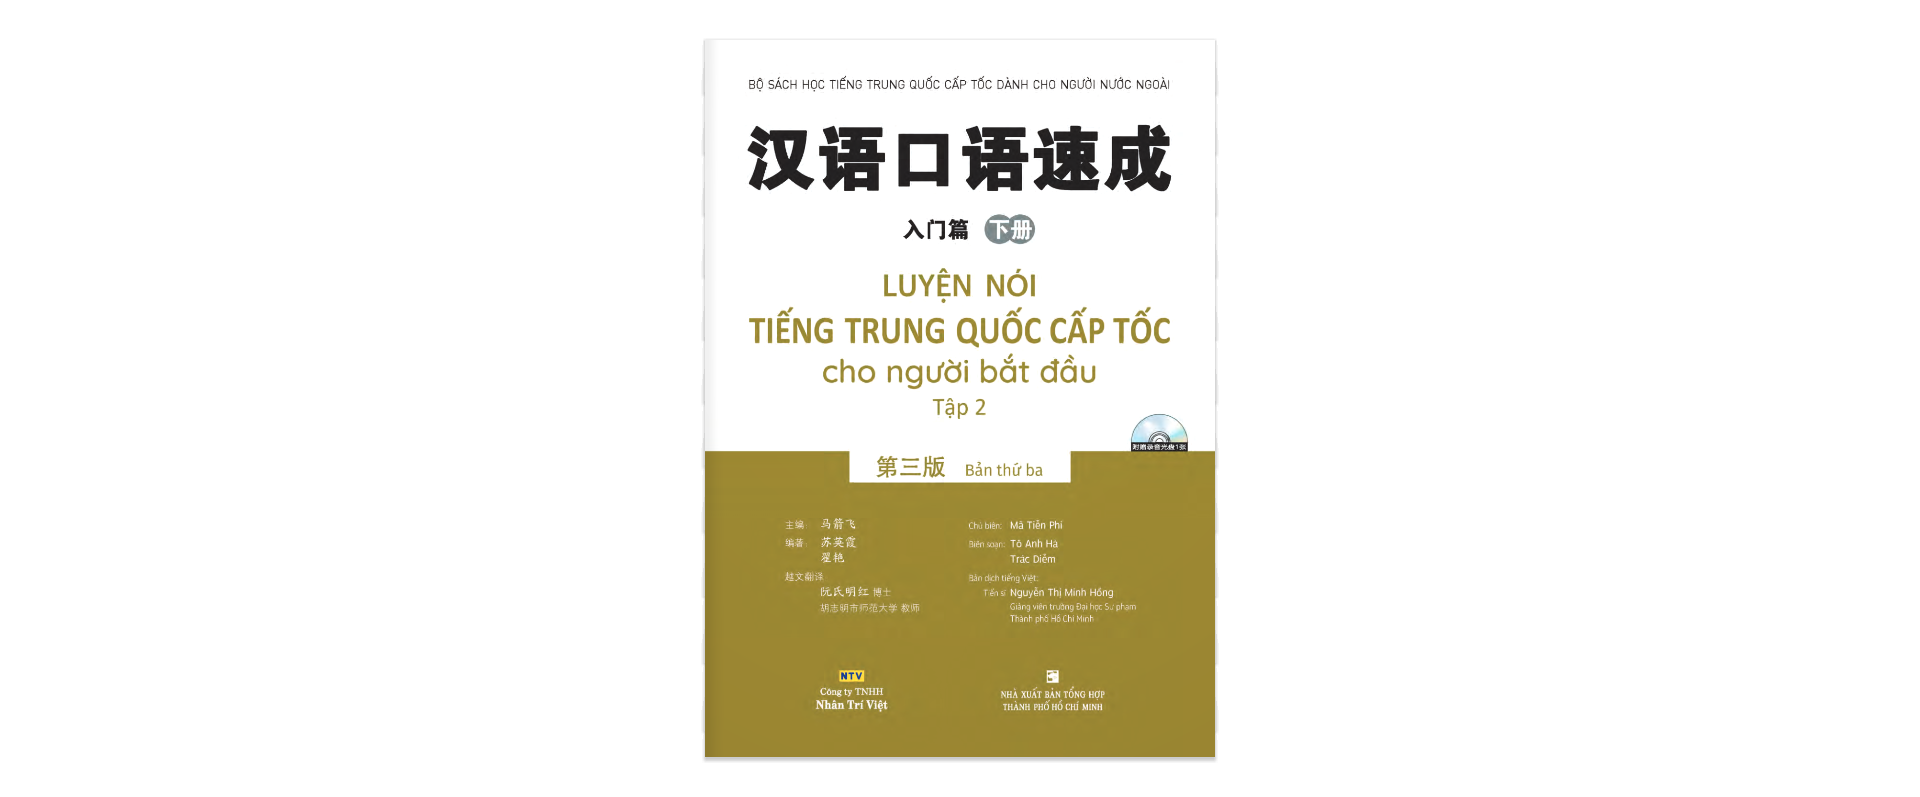 Sách - Luyện Nói Tiếng Trung Quốc Cấp Tốc Cho Người Bắt Đầu - Tập 2 (Cd)